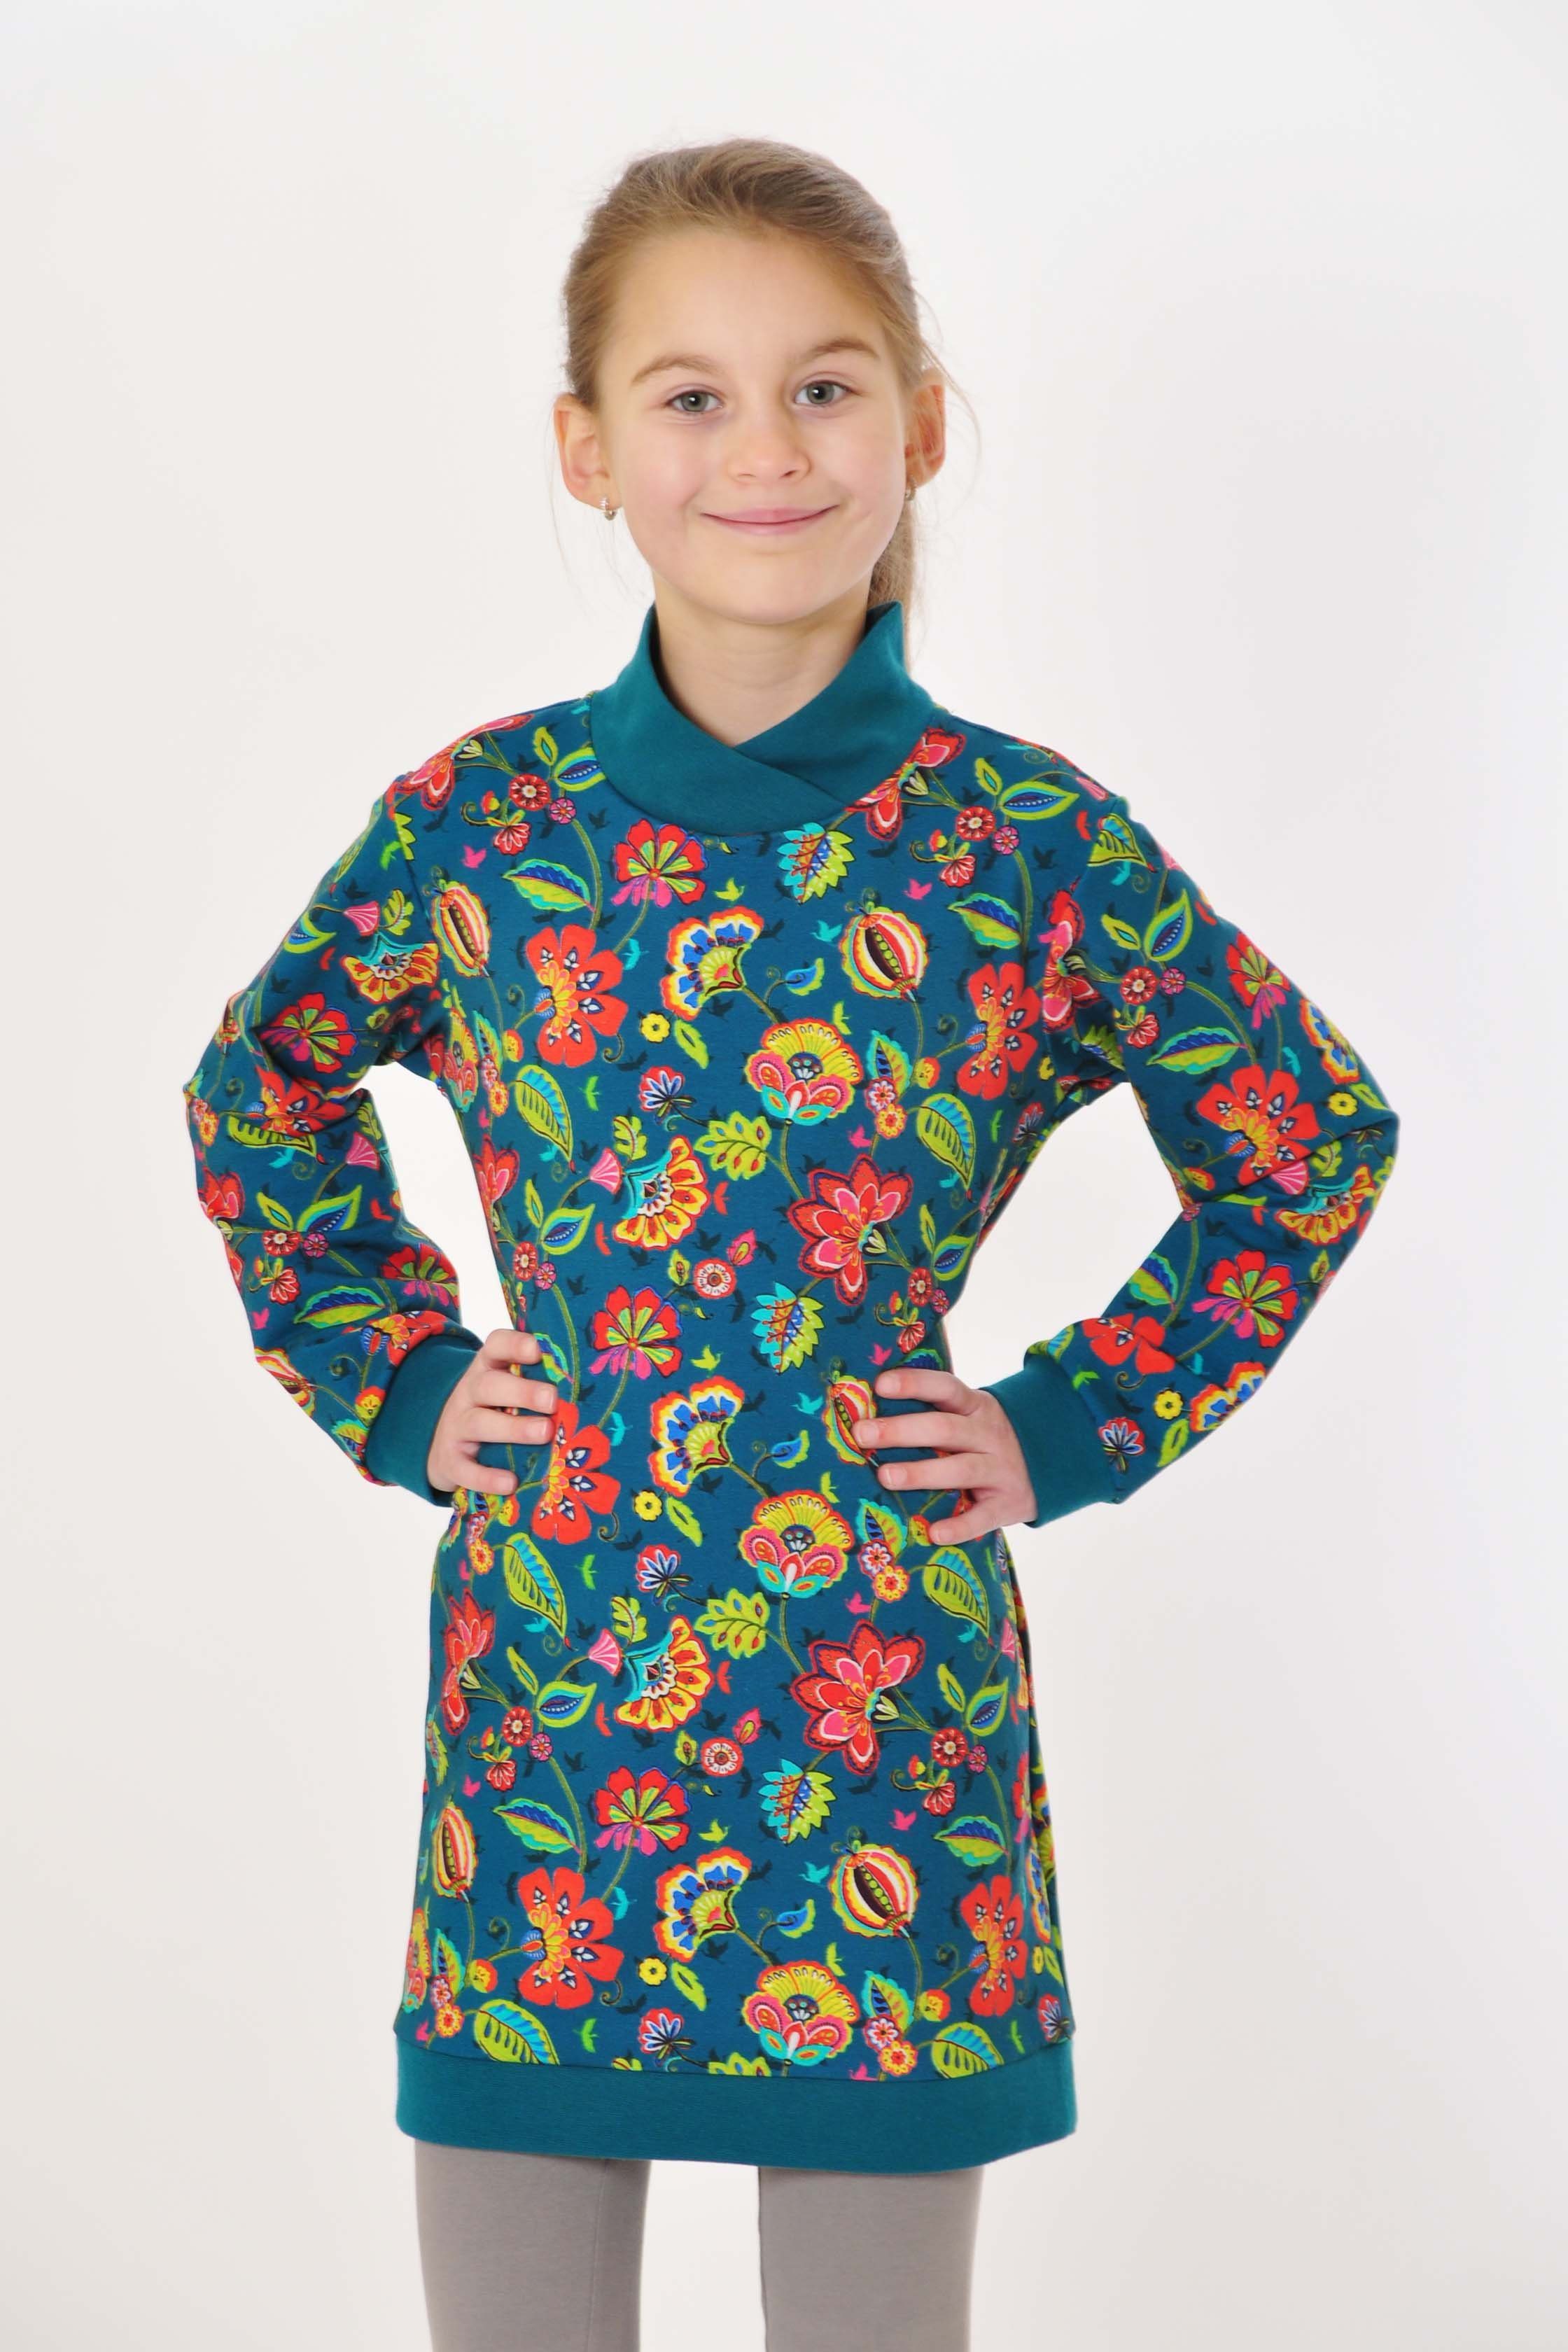 Blumen Produktion coolismo Mädchen Sweatshirt Kleid mit petrol Sweatkleid Motivdruck für coole europäische